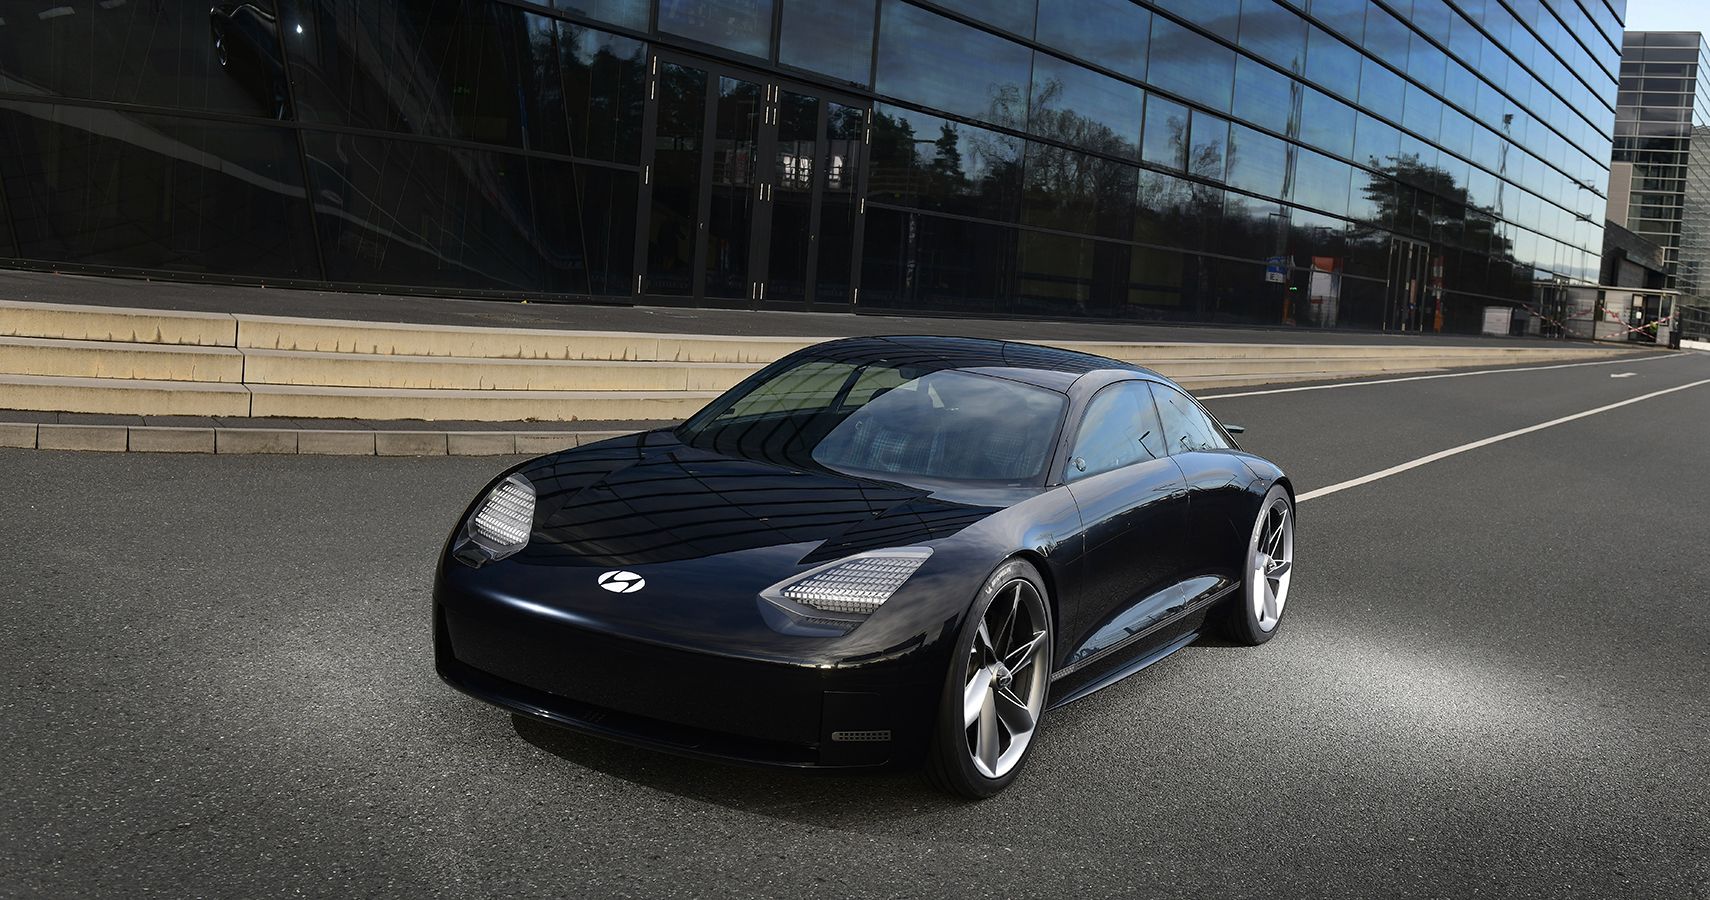 Hyundai Prophecy Concept EV road